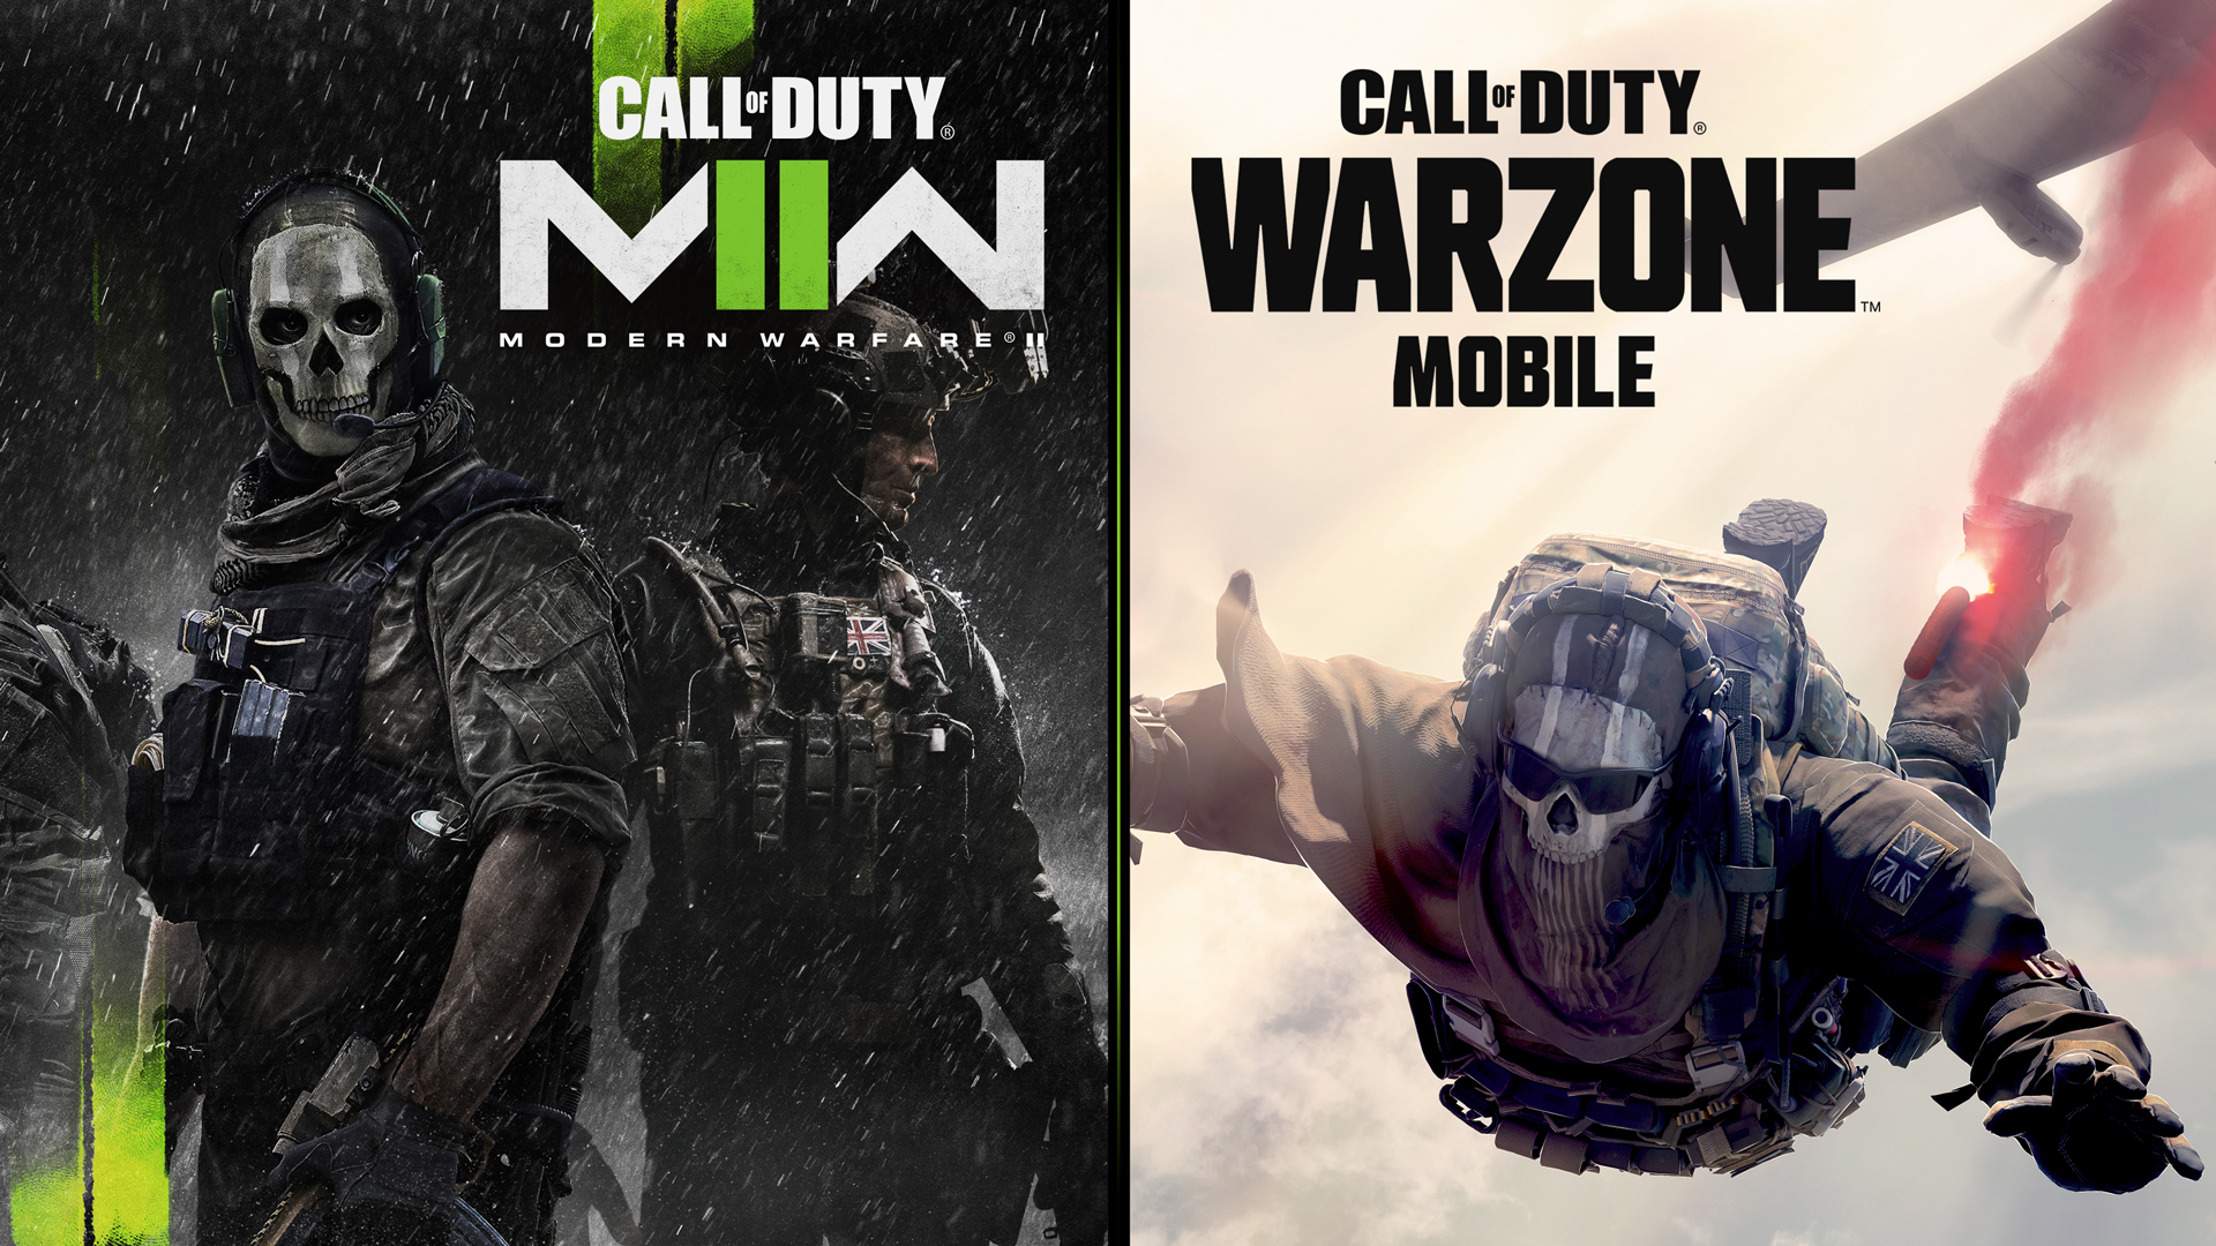 Call of Duty con una beta para Modern Warfare II bate récords y Call of Duty: Warzone Mobile se convierte en el juego para móvil que más rápido supera los 15 millones de preinscripciones.